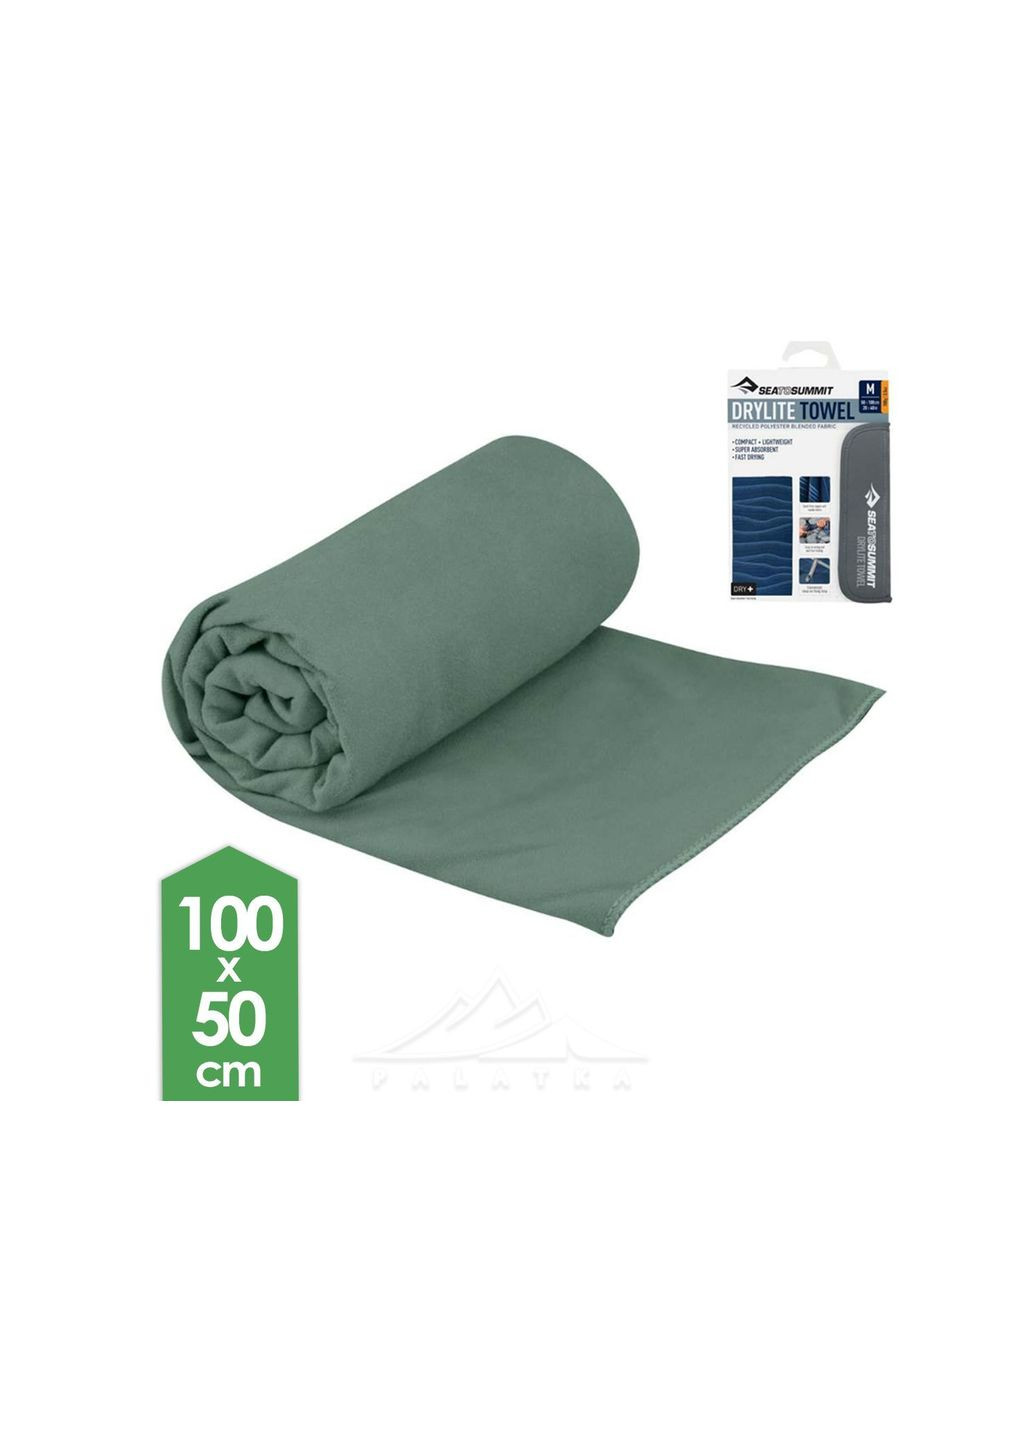 Sea To Summit полотенце drylite towel m серыйзеленый комбинированный производство -